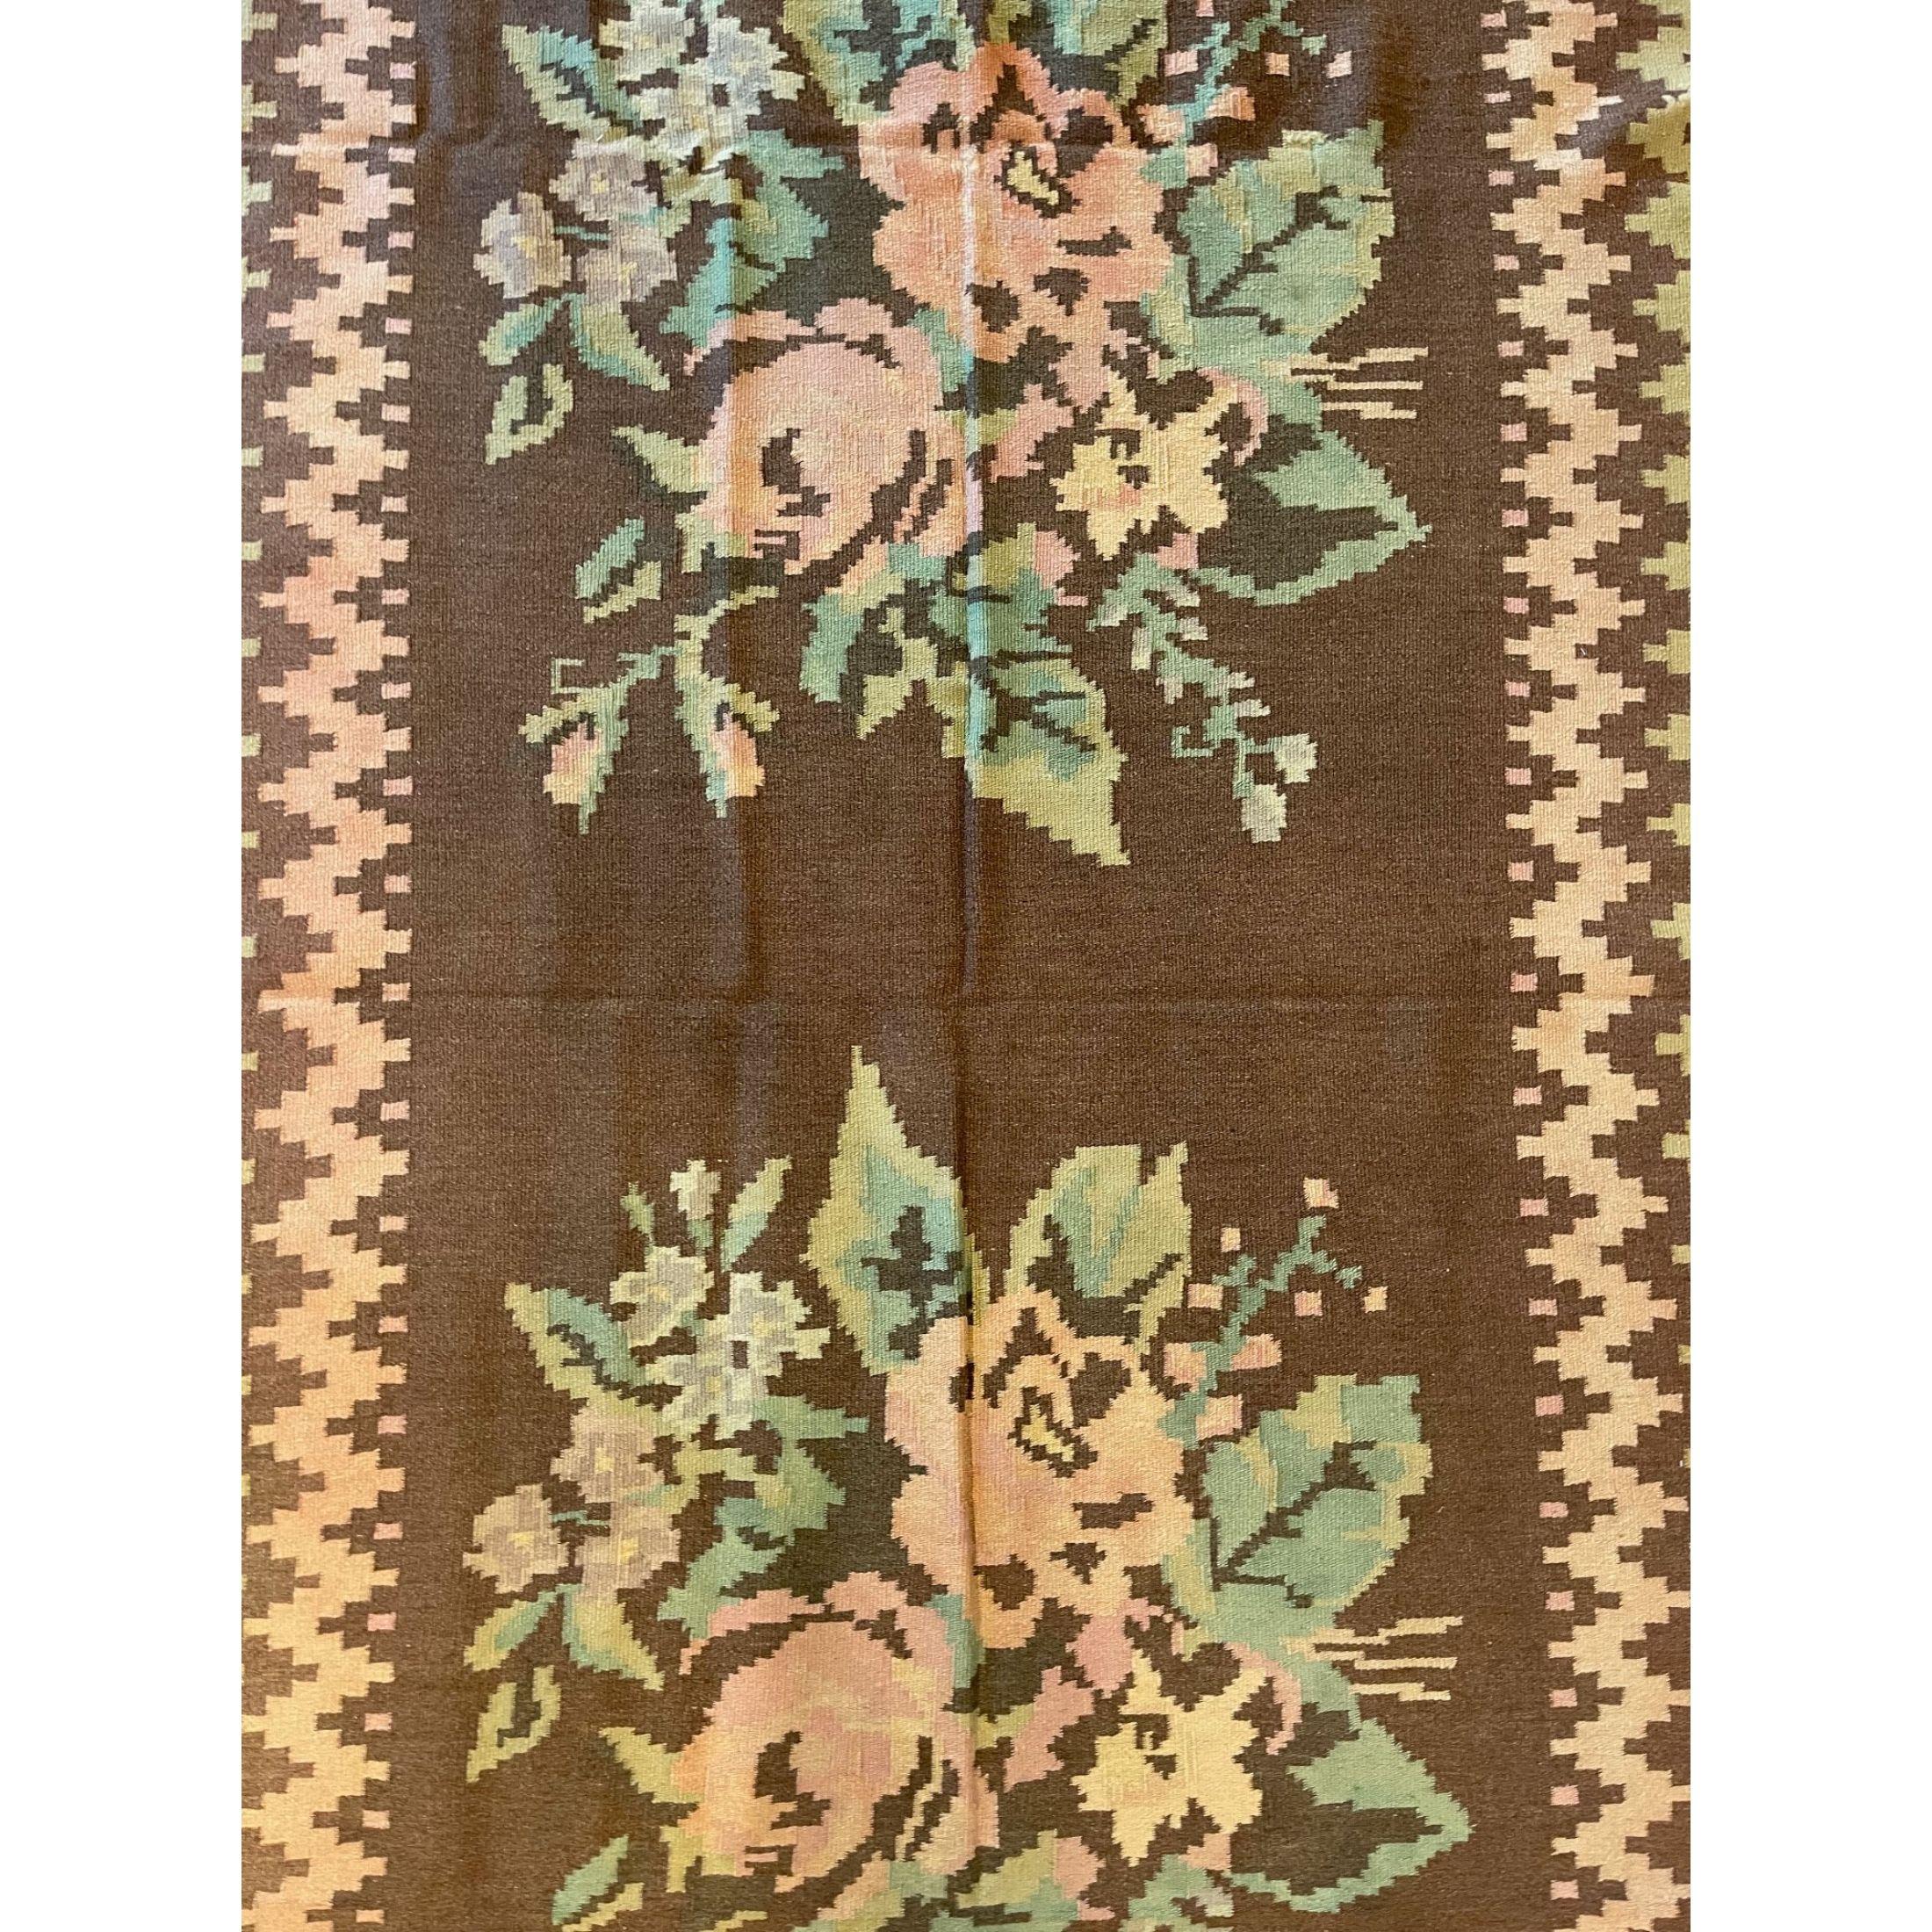 Antike bessarabische Teppiche/Kilims in Flor- und Gobelin-Webtechnik gehören zu den schönsten Teppichen, die in Europa hergestellt wurden. Viele der bessarabischen Kelims wurden um die Mitte bis zum Ende des 19. Jahrhunderts gewebt, einige stammen